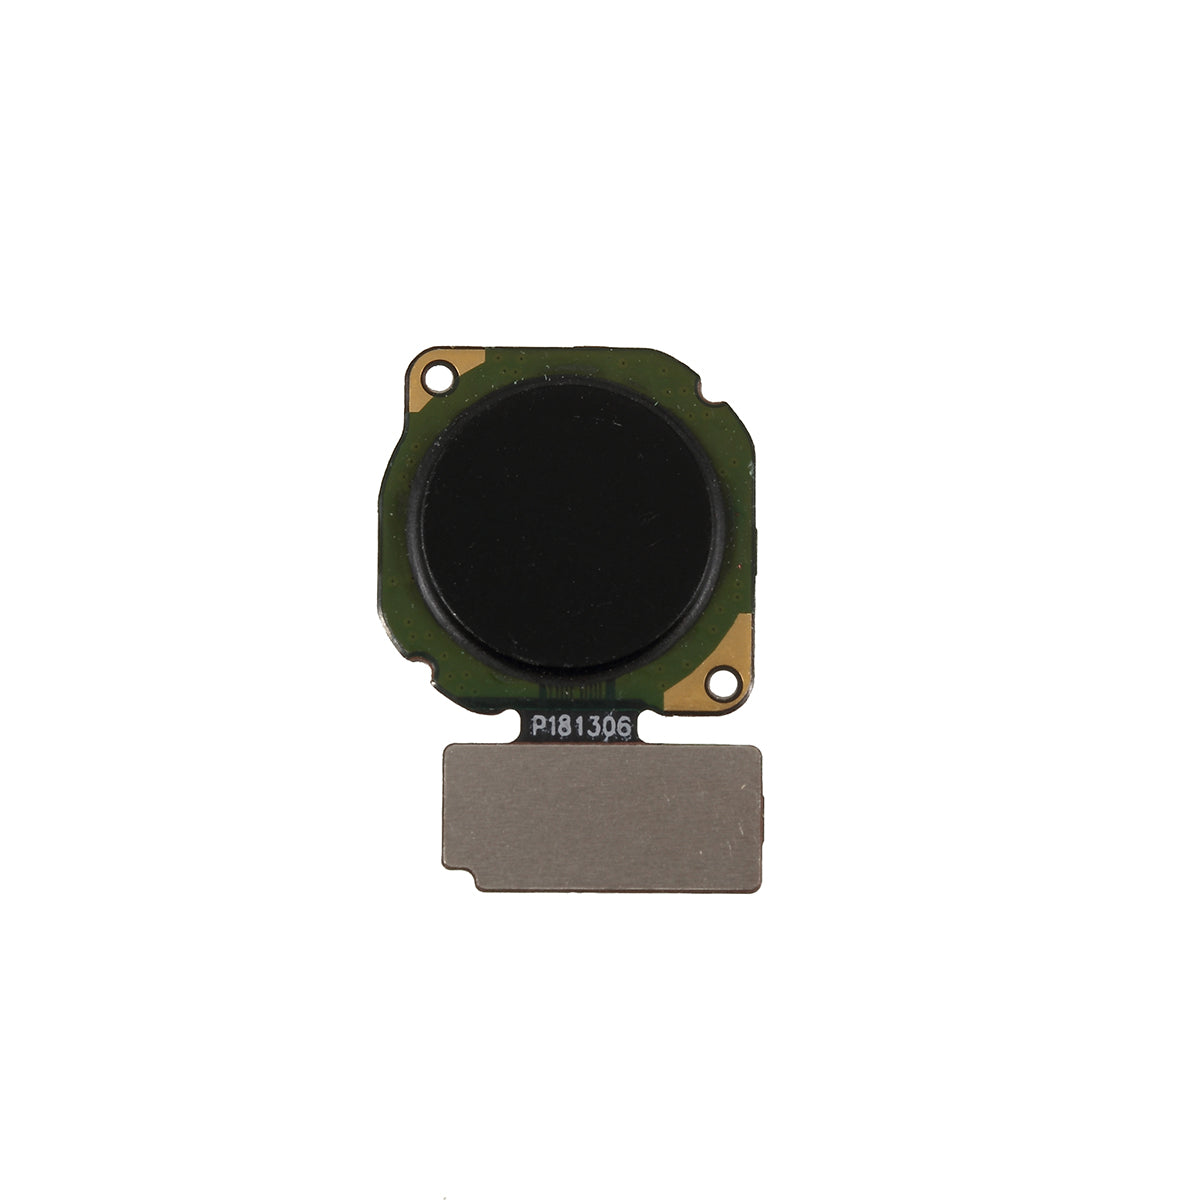 OEM Fingerprint Home Button Flex Cable Repair Part for Honor 8X / View 10 Lite - Black